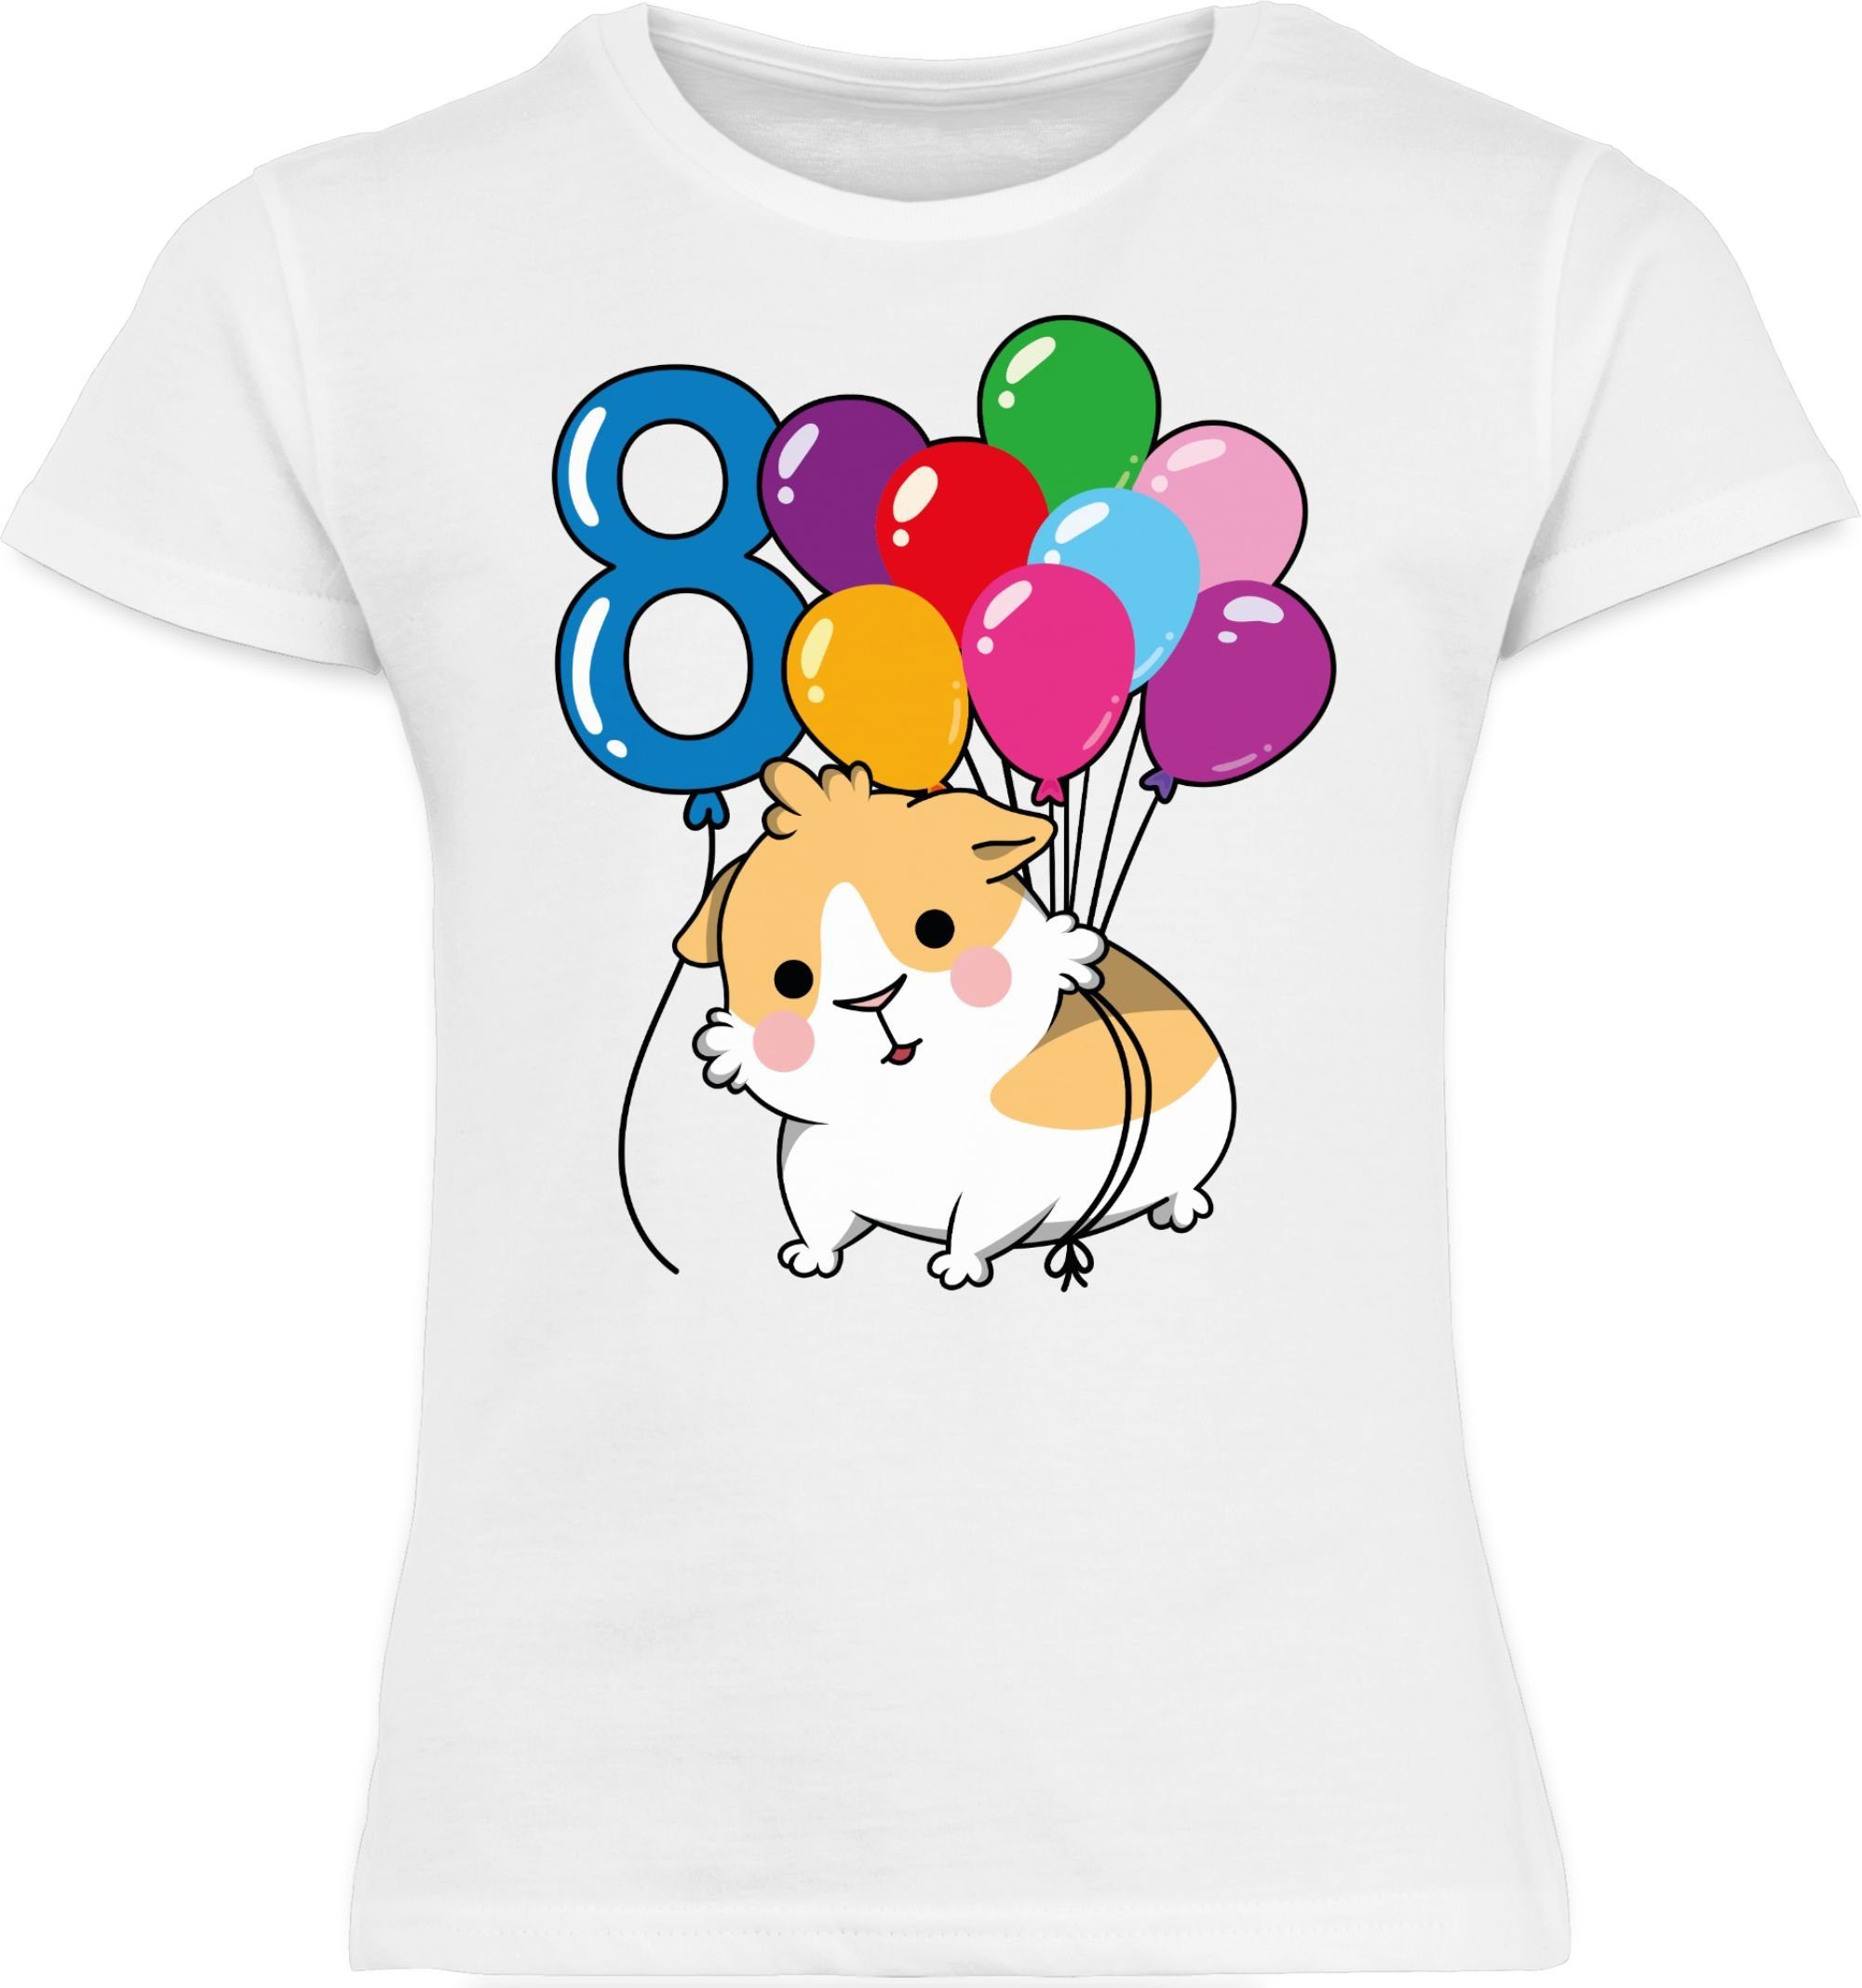 Shirtracer T-Shirt Meerschweinchen Acht - 8. Kinder - T-Shirt 1 t Mädchen mädels Geburtstag shirt kindershirt Weiß kinder - - tshirt meerschweinchen